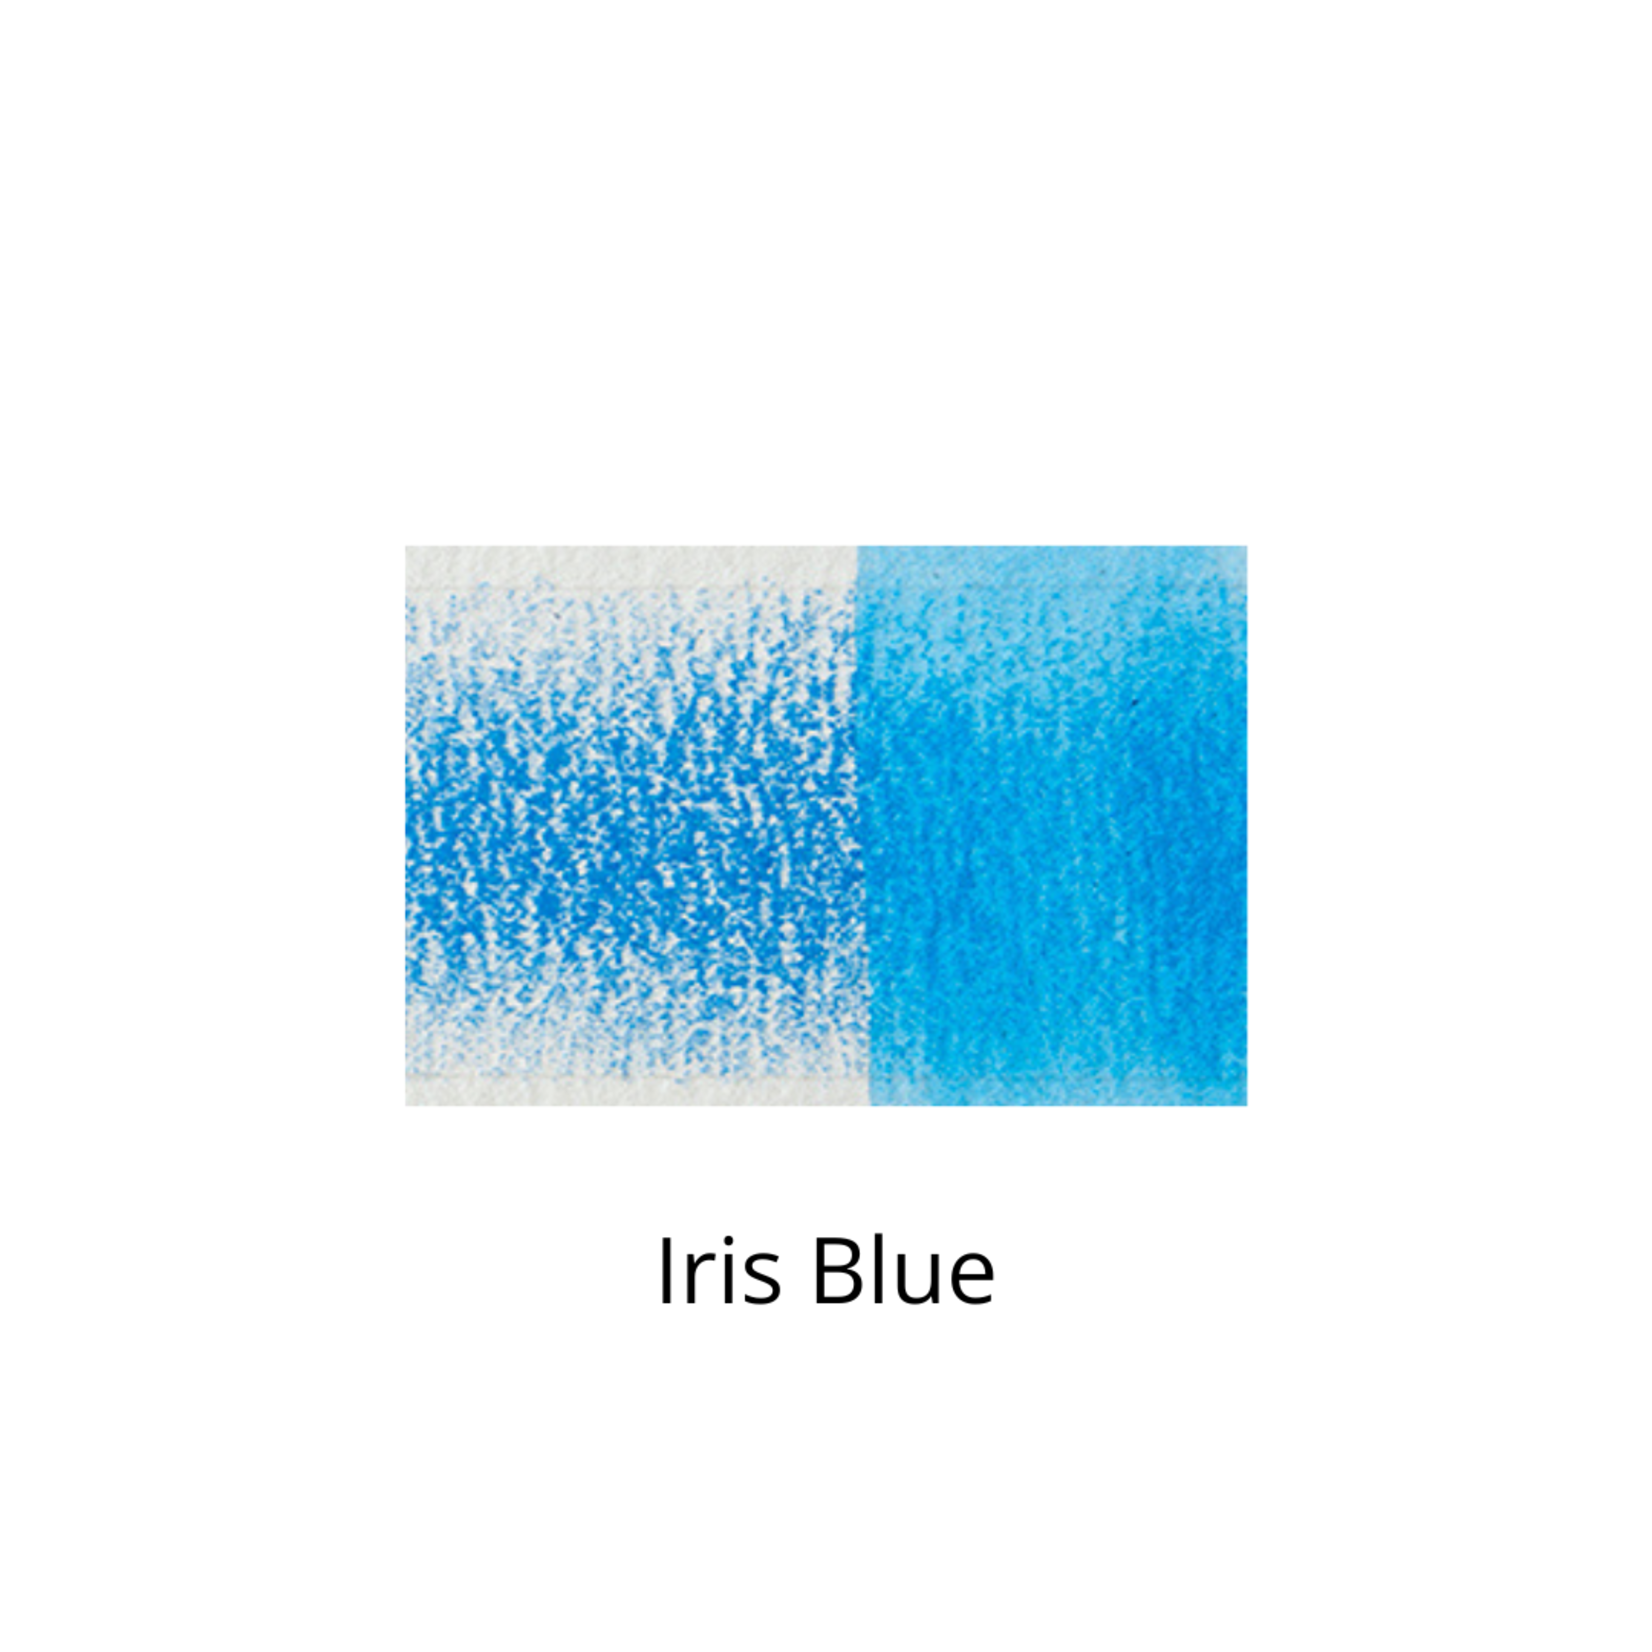 DERWENT DERWENT INKTENSE PENCIL 0900 IRIS BLUE